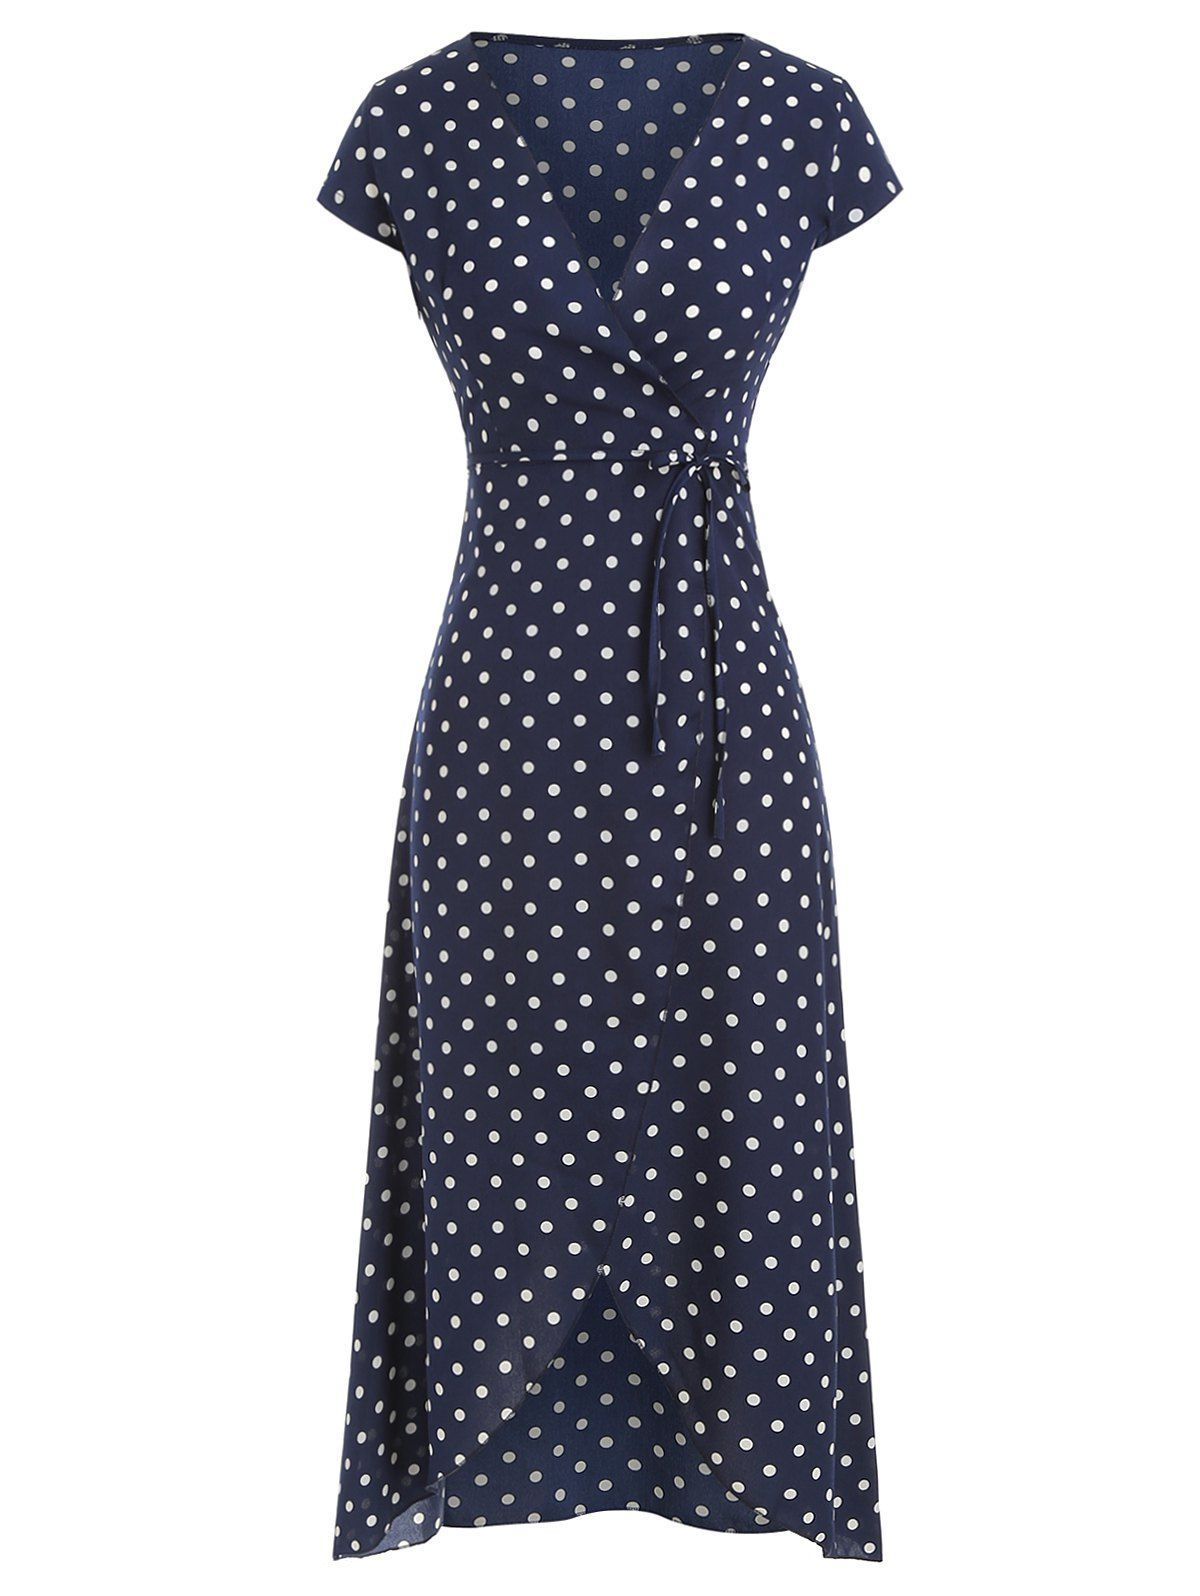 Polka Dot Belted Asymmetric Dress - CADETBLUE 2XL